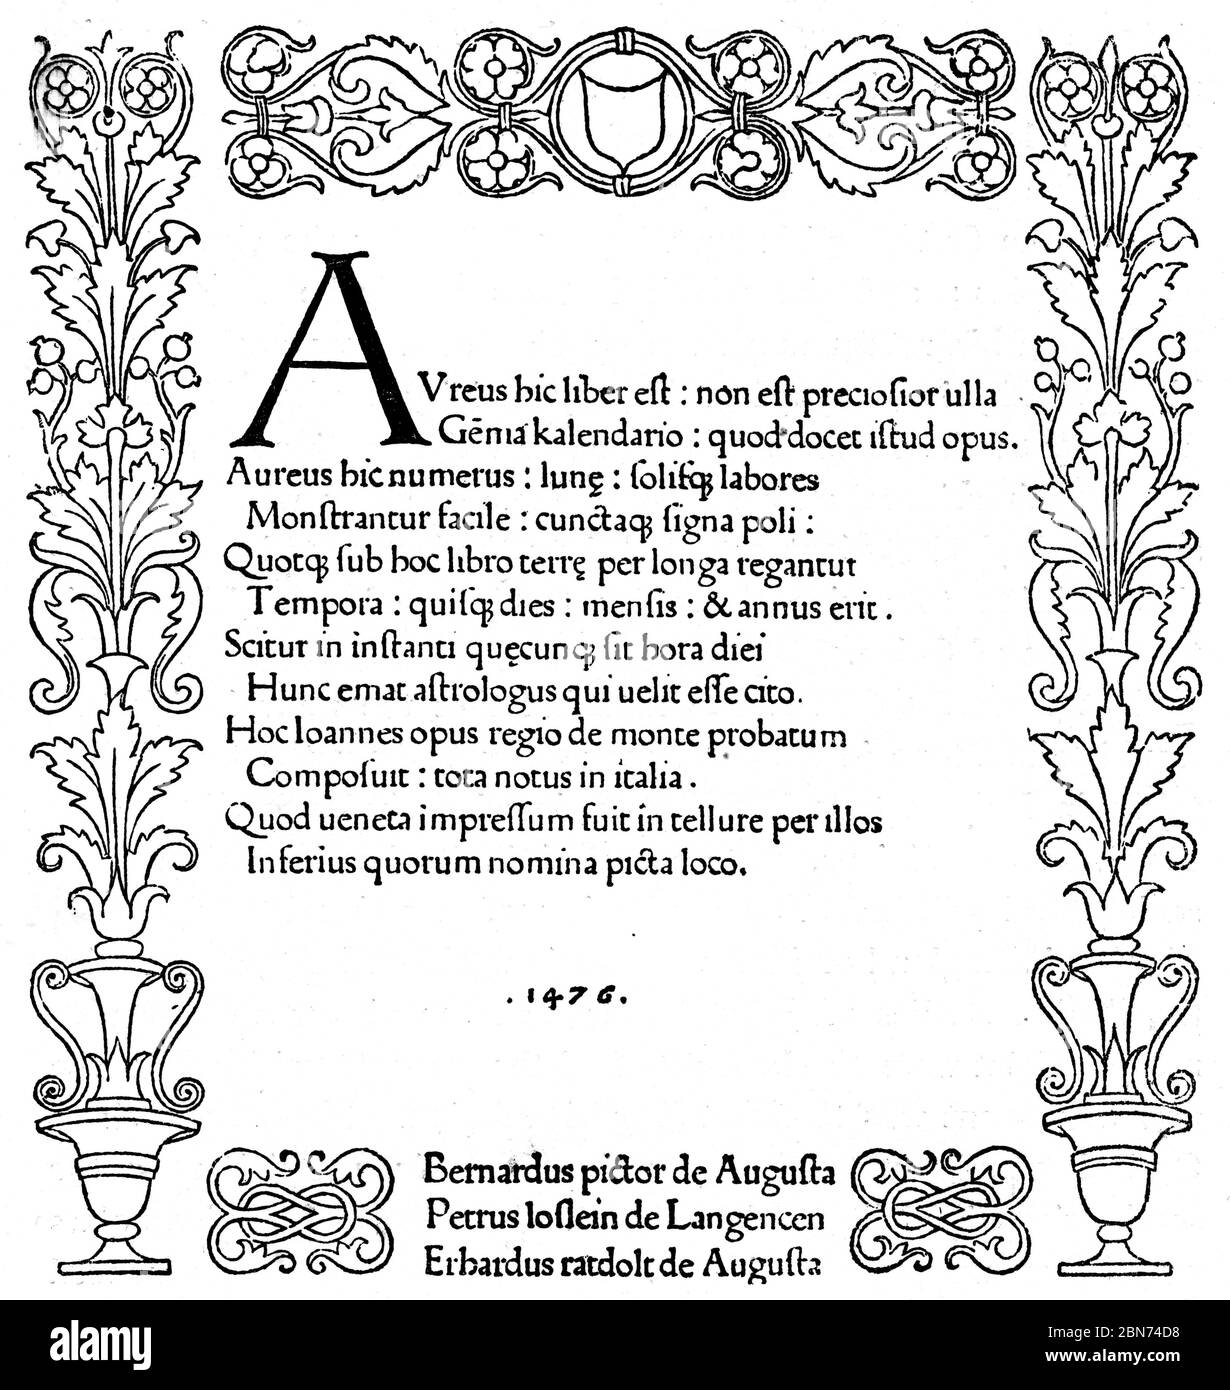 Pagina del titolo di Kalendarium (Calendarium), 1476. Di Regionomontano (1436-1476). Johannes Müller von Königsberg (1436-1476), meglio conosciuto come Regionomontano (1436-1476), è stato un matematico, astrologo e astronomo. Nel 1475 fu chiamato a Roma da Papa Sisto IV per lavorare sulla riforma del calendario. Foto Stock